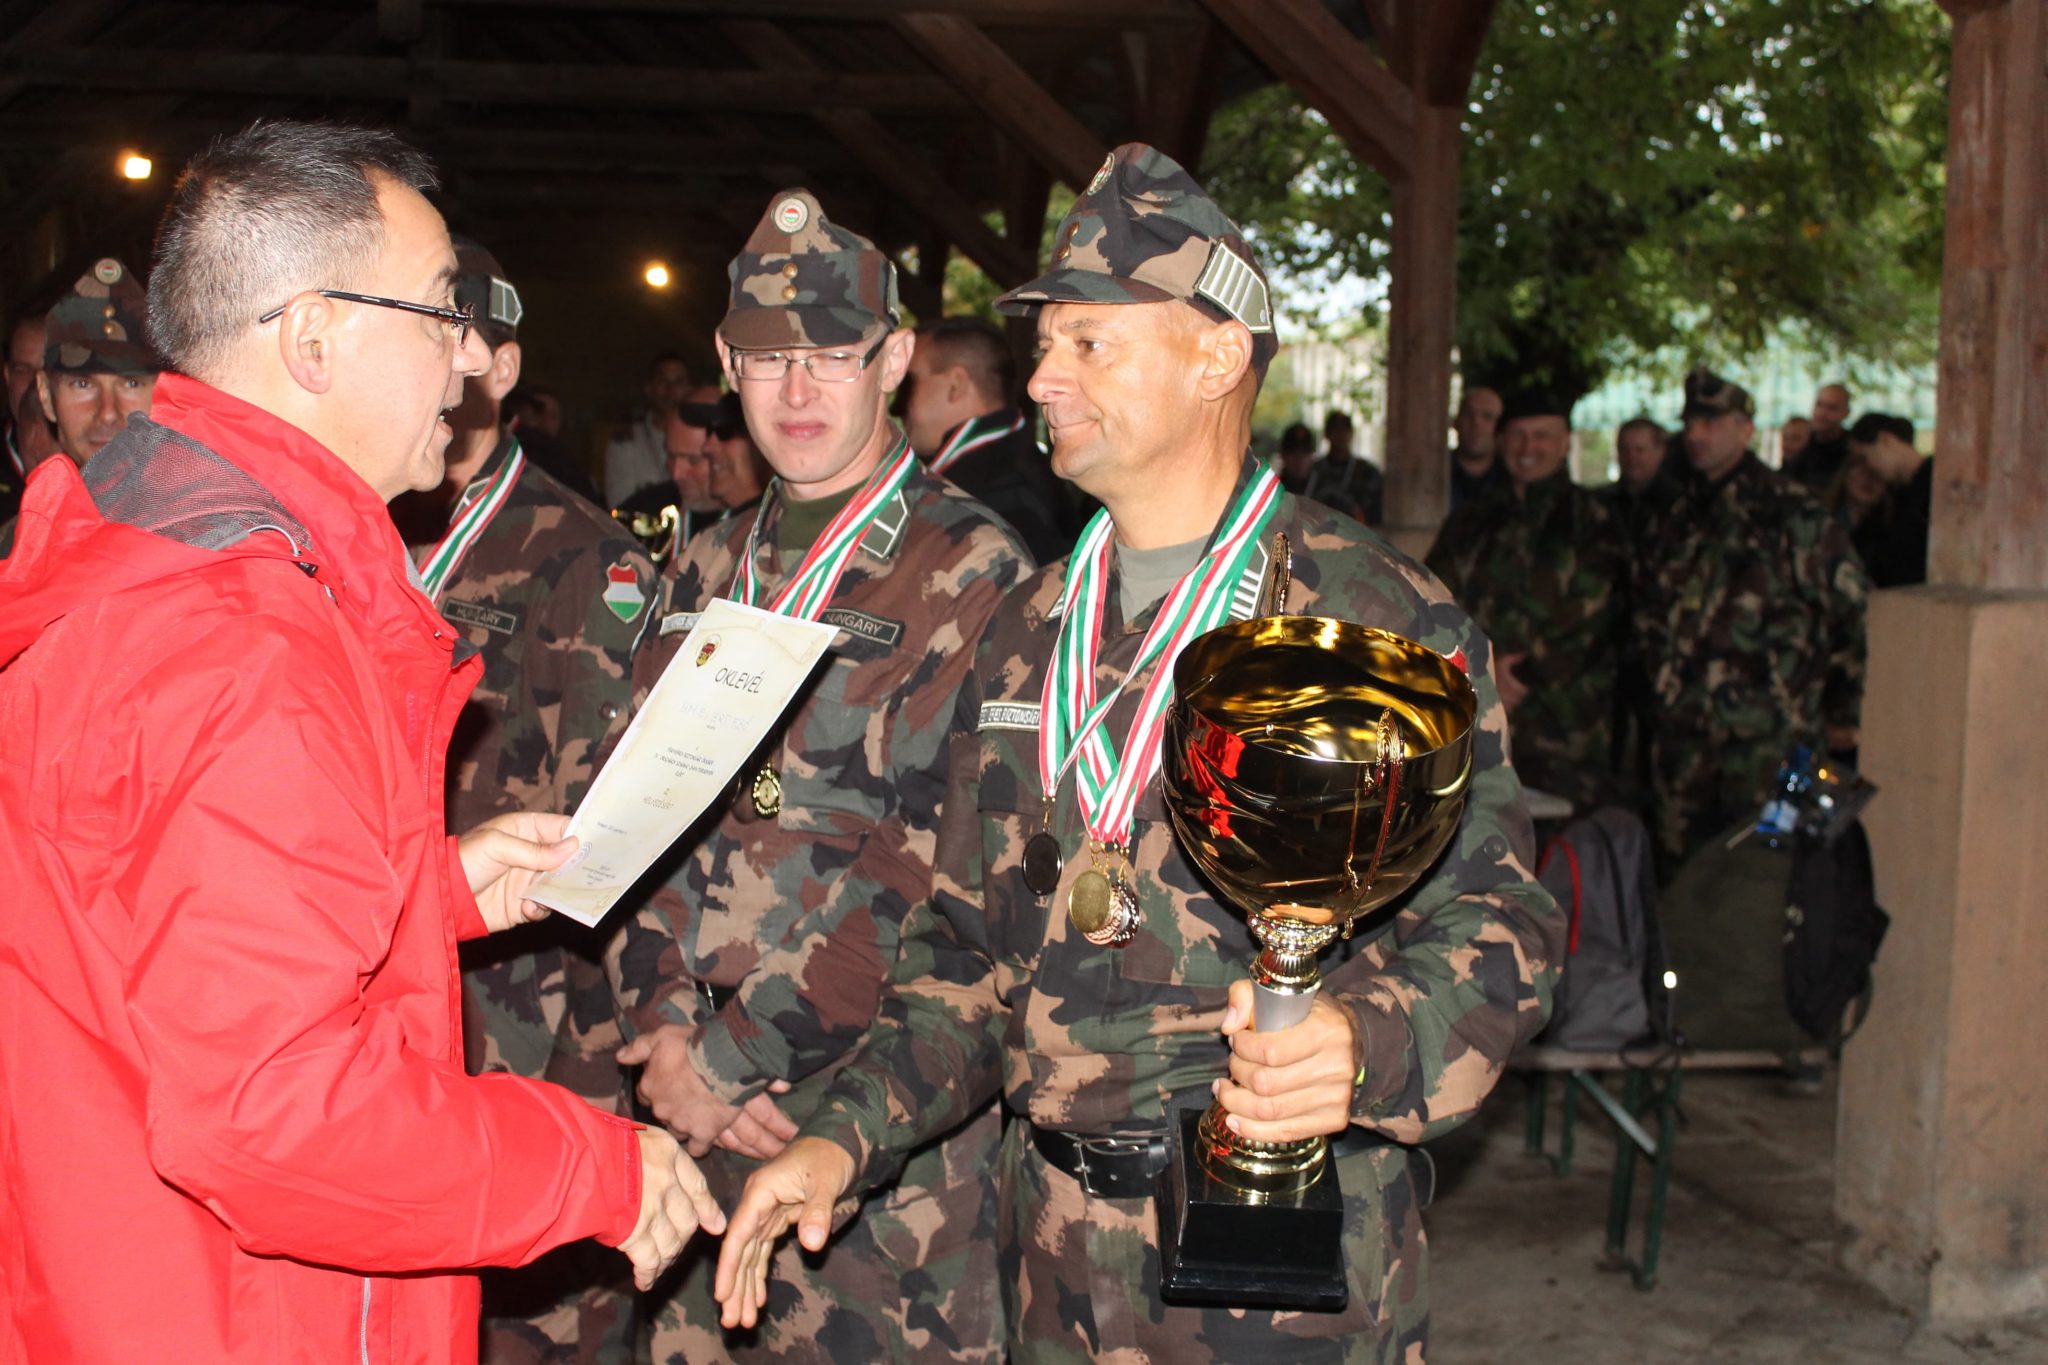 Az FBŐ IV. Országos Verseny abszolút kategória II. helyezettje a HM EI Zrt. FBŐ csapata